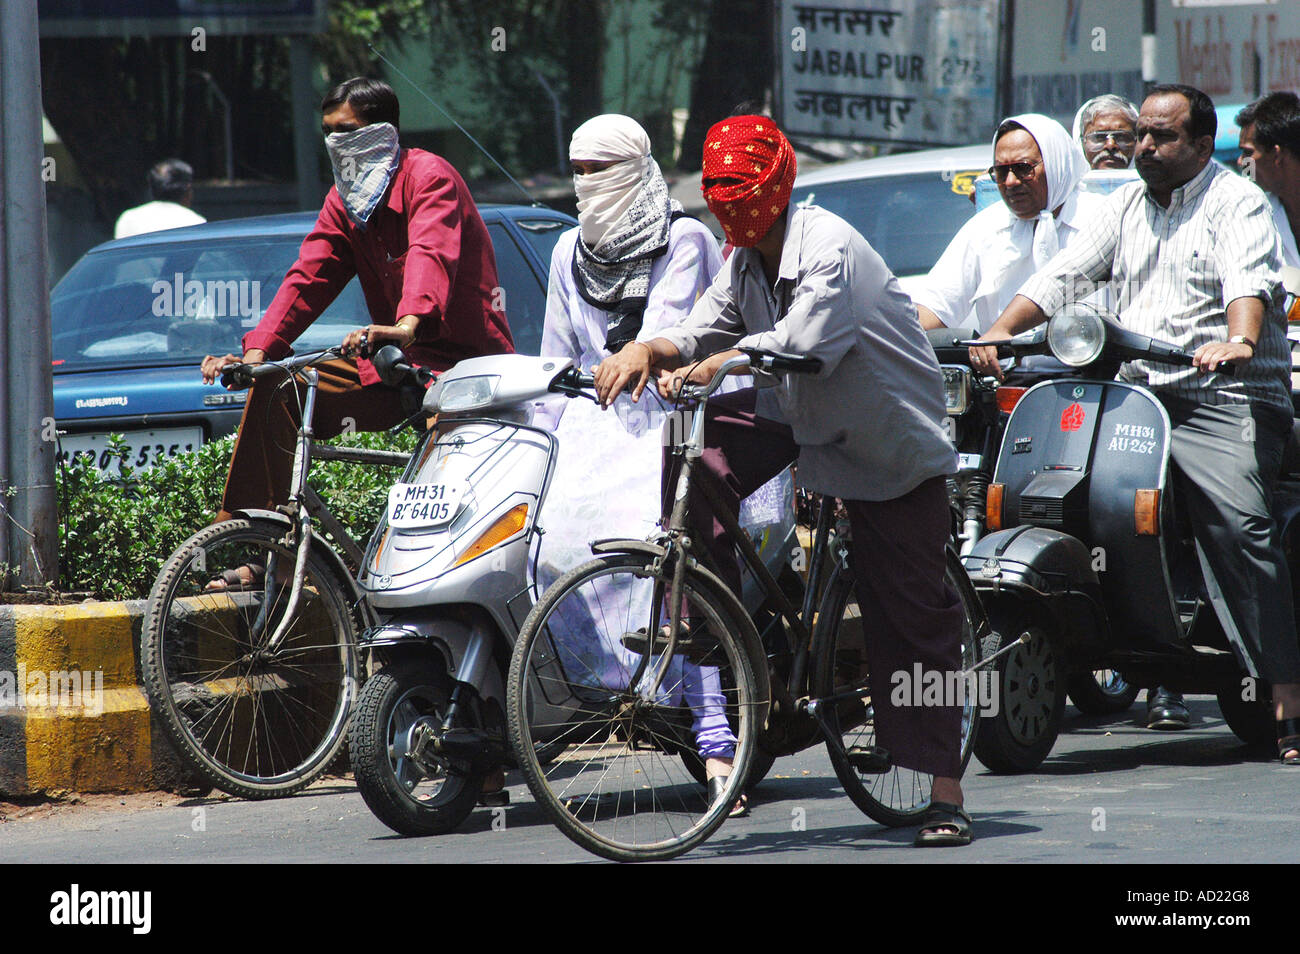 Zwei Radfahrer bedecken ihre Gesichter mit Schals für Sicherheit und Schutz bei sommerlicher Hitze in Nagpur Maharashtra Indien Stockfoto